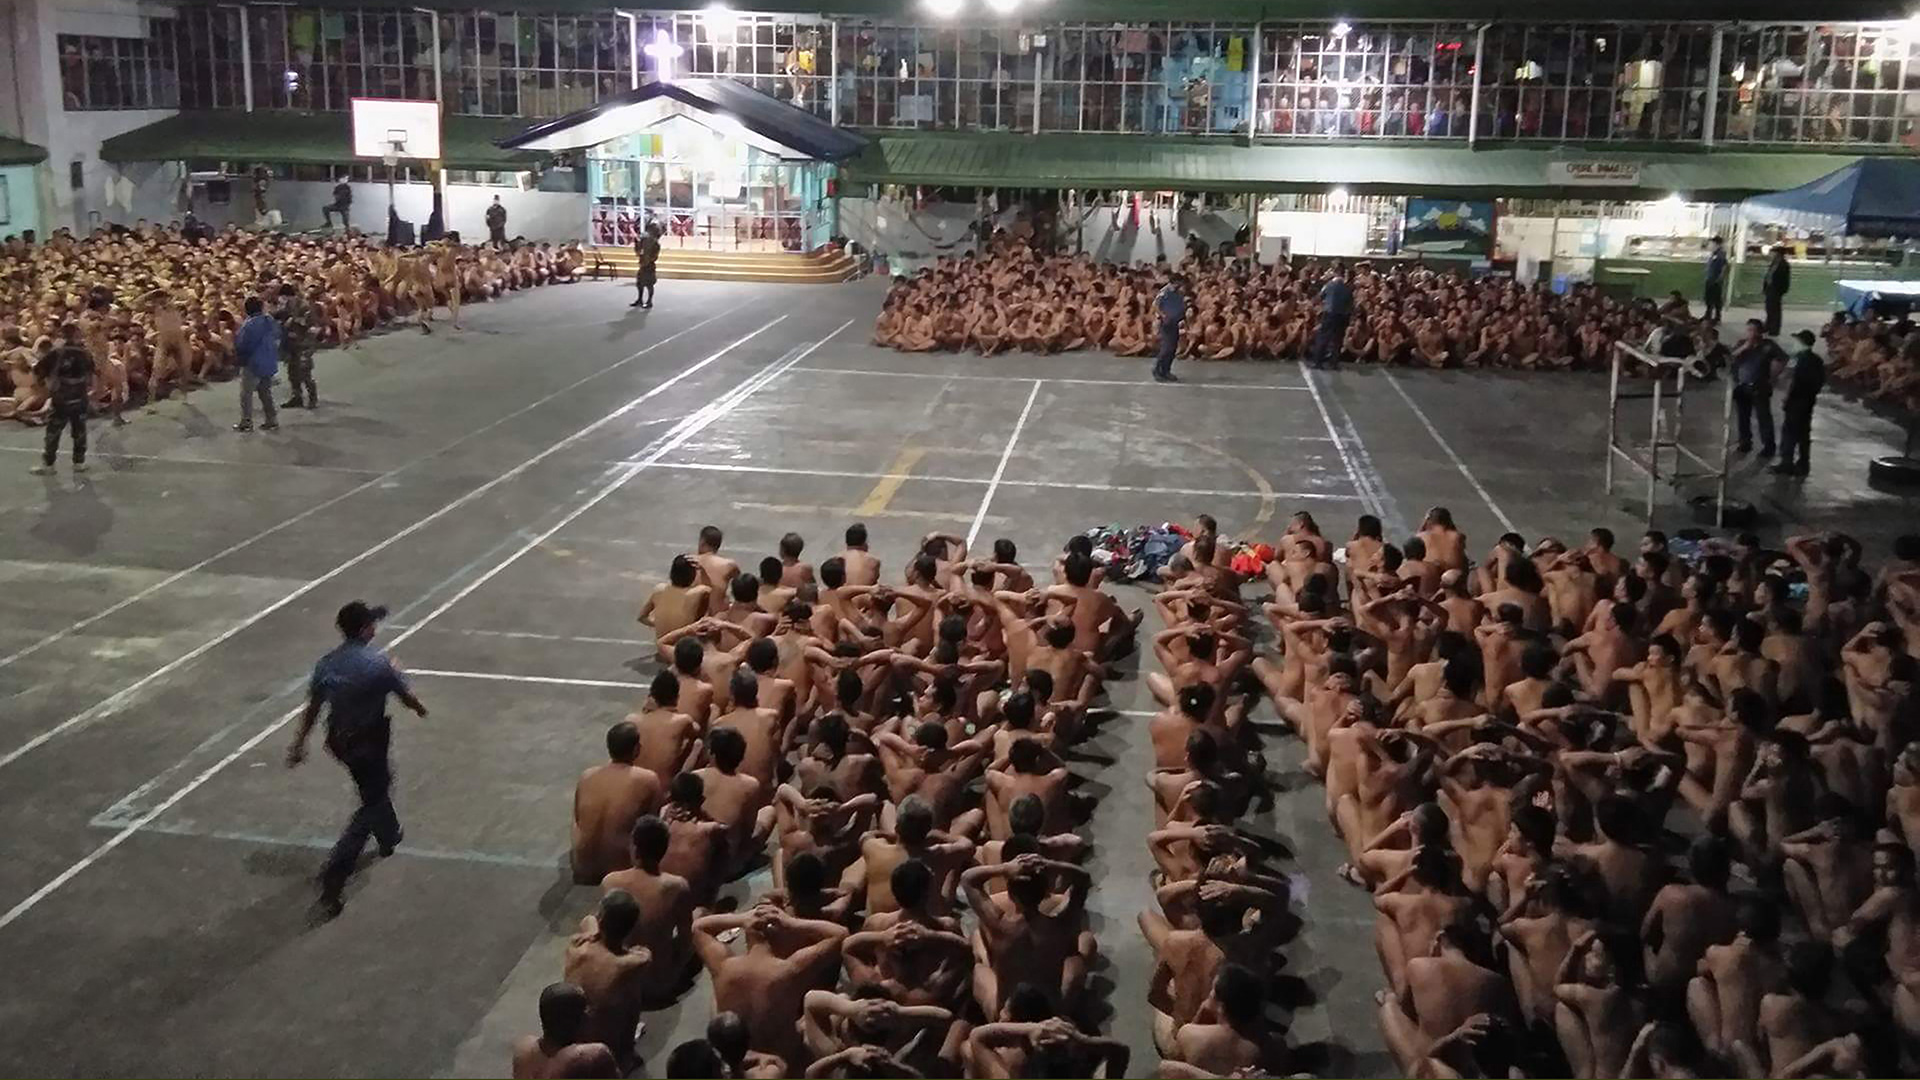 Unas fotos de presos desnudos en un registro provocan indignación en Filipinas